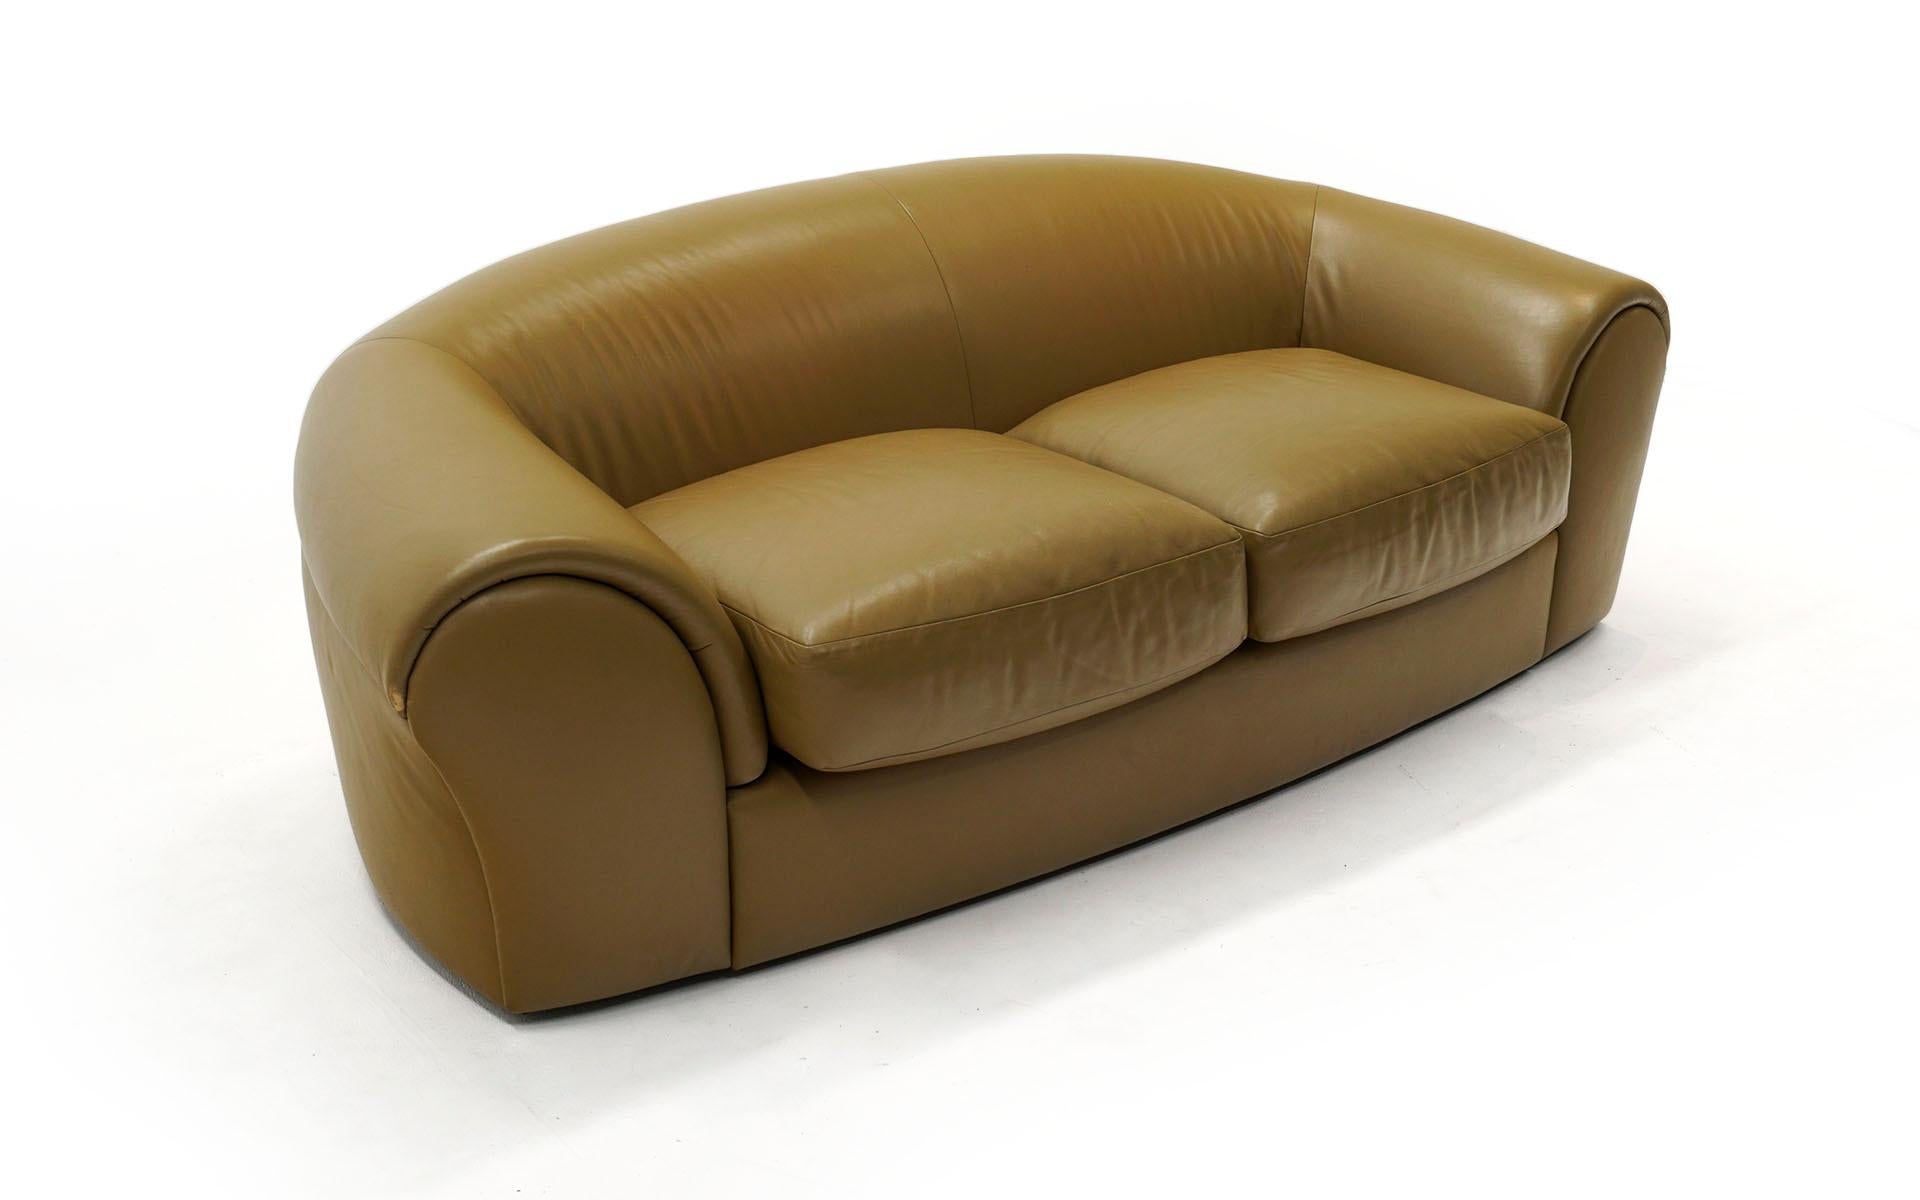 Ein einzelnes Robert Venturi Grandma Sofa in Leder, hergestellt von Knoll, 1980er Jahre. Sehr guter Originalzustand. Keine Risse oder Schrammen auf dem Leder. Leichte Gebrauchsspuren.  Minimale ehrliche Abnutzung.  Sehr bequem und sofort